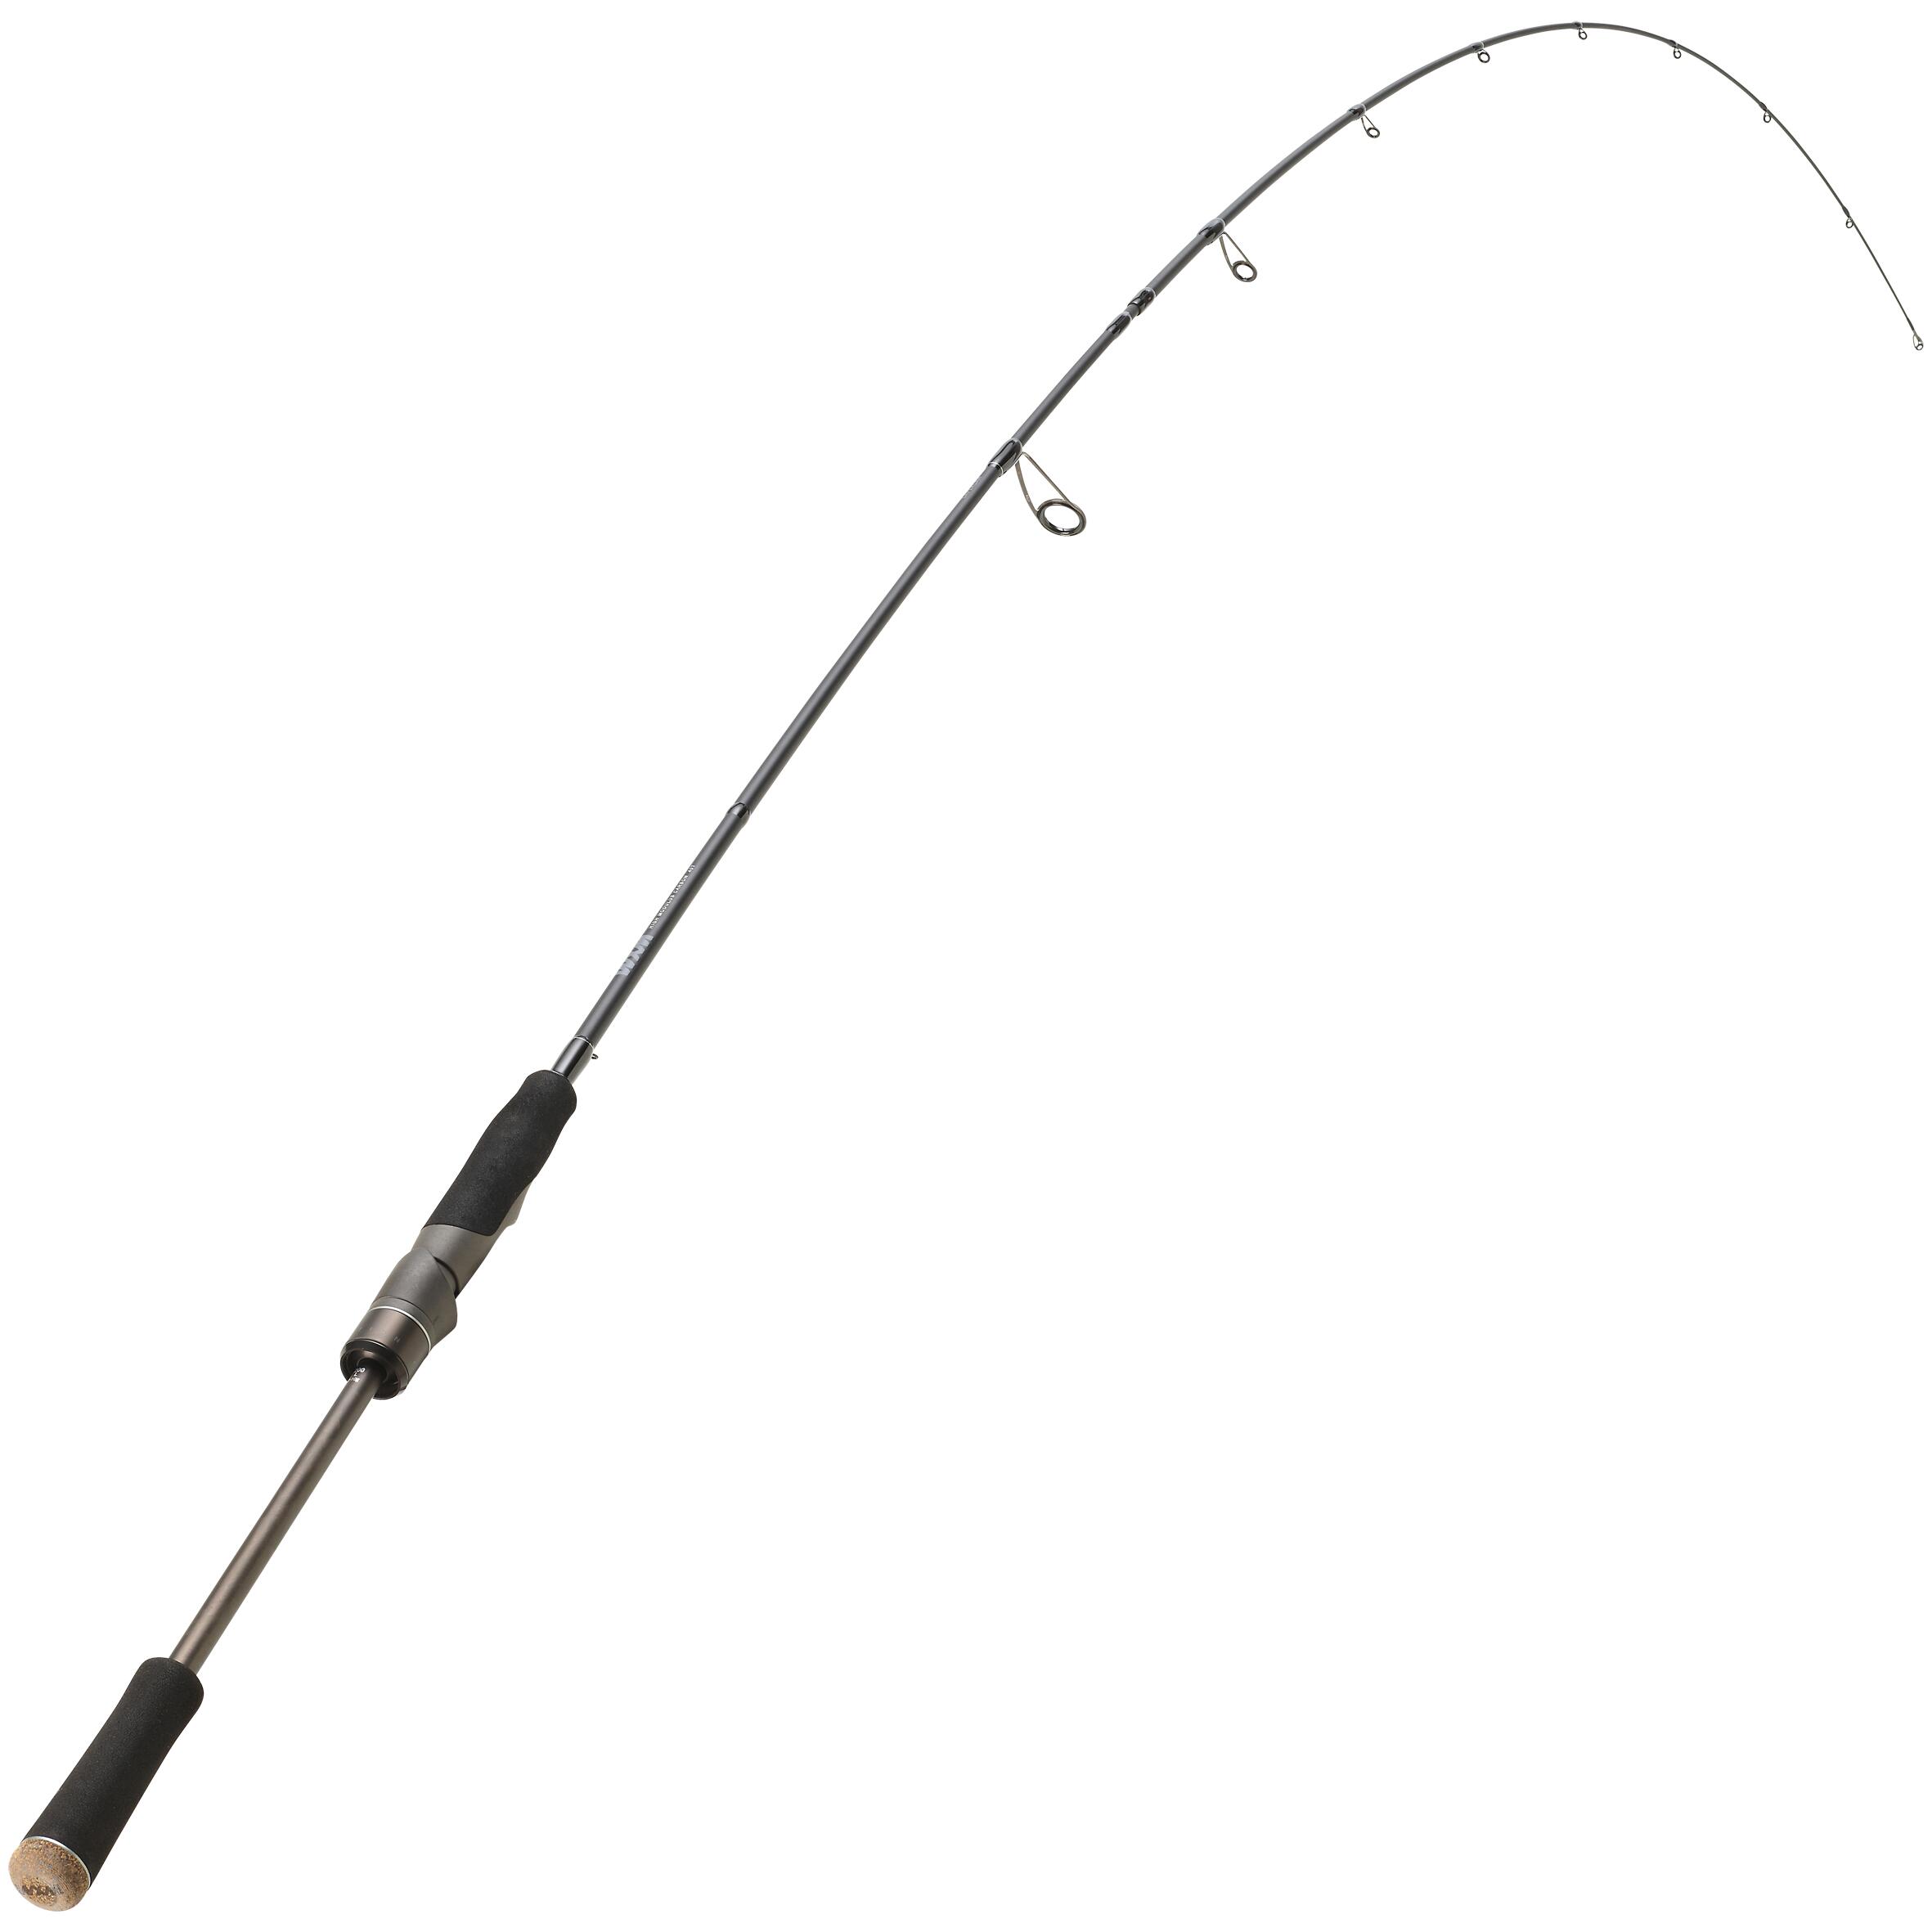 LURE FISHING ROD WXM-9 200L 2/11